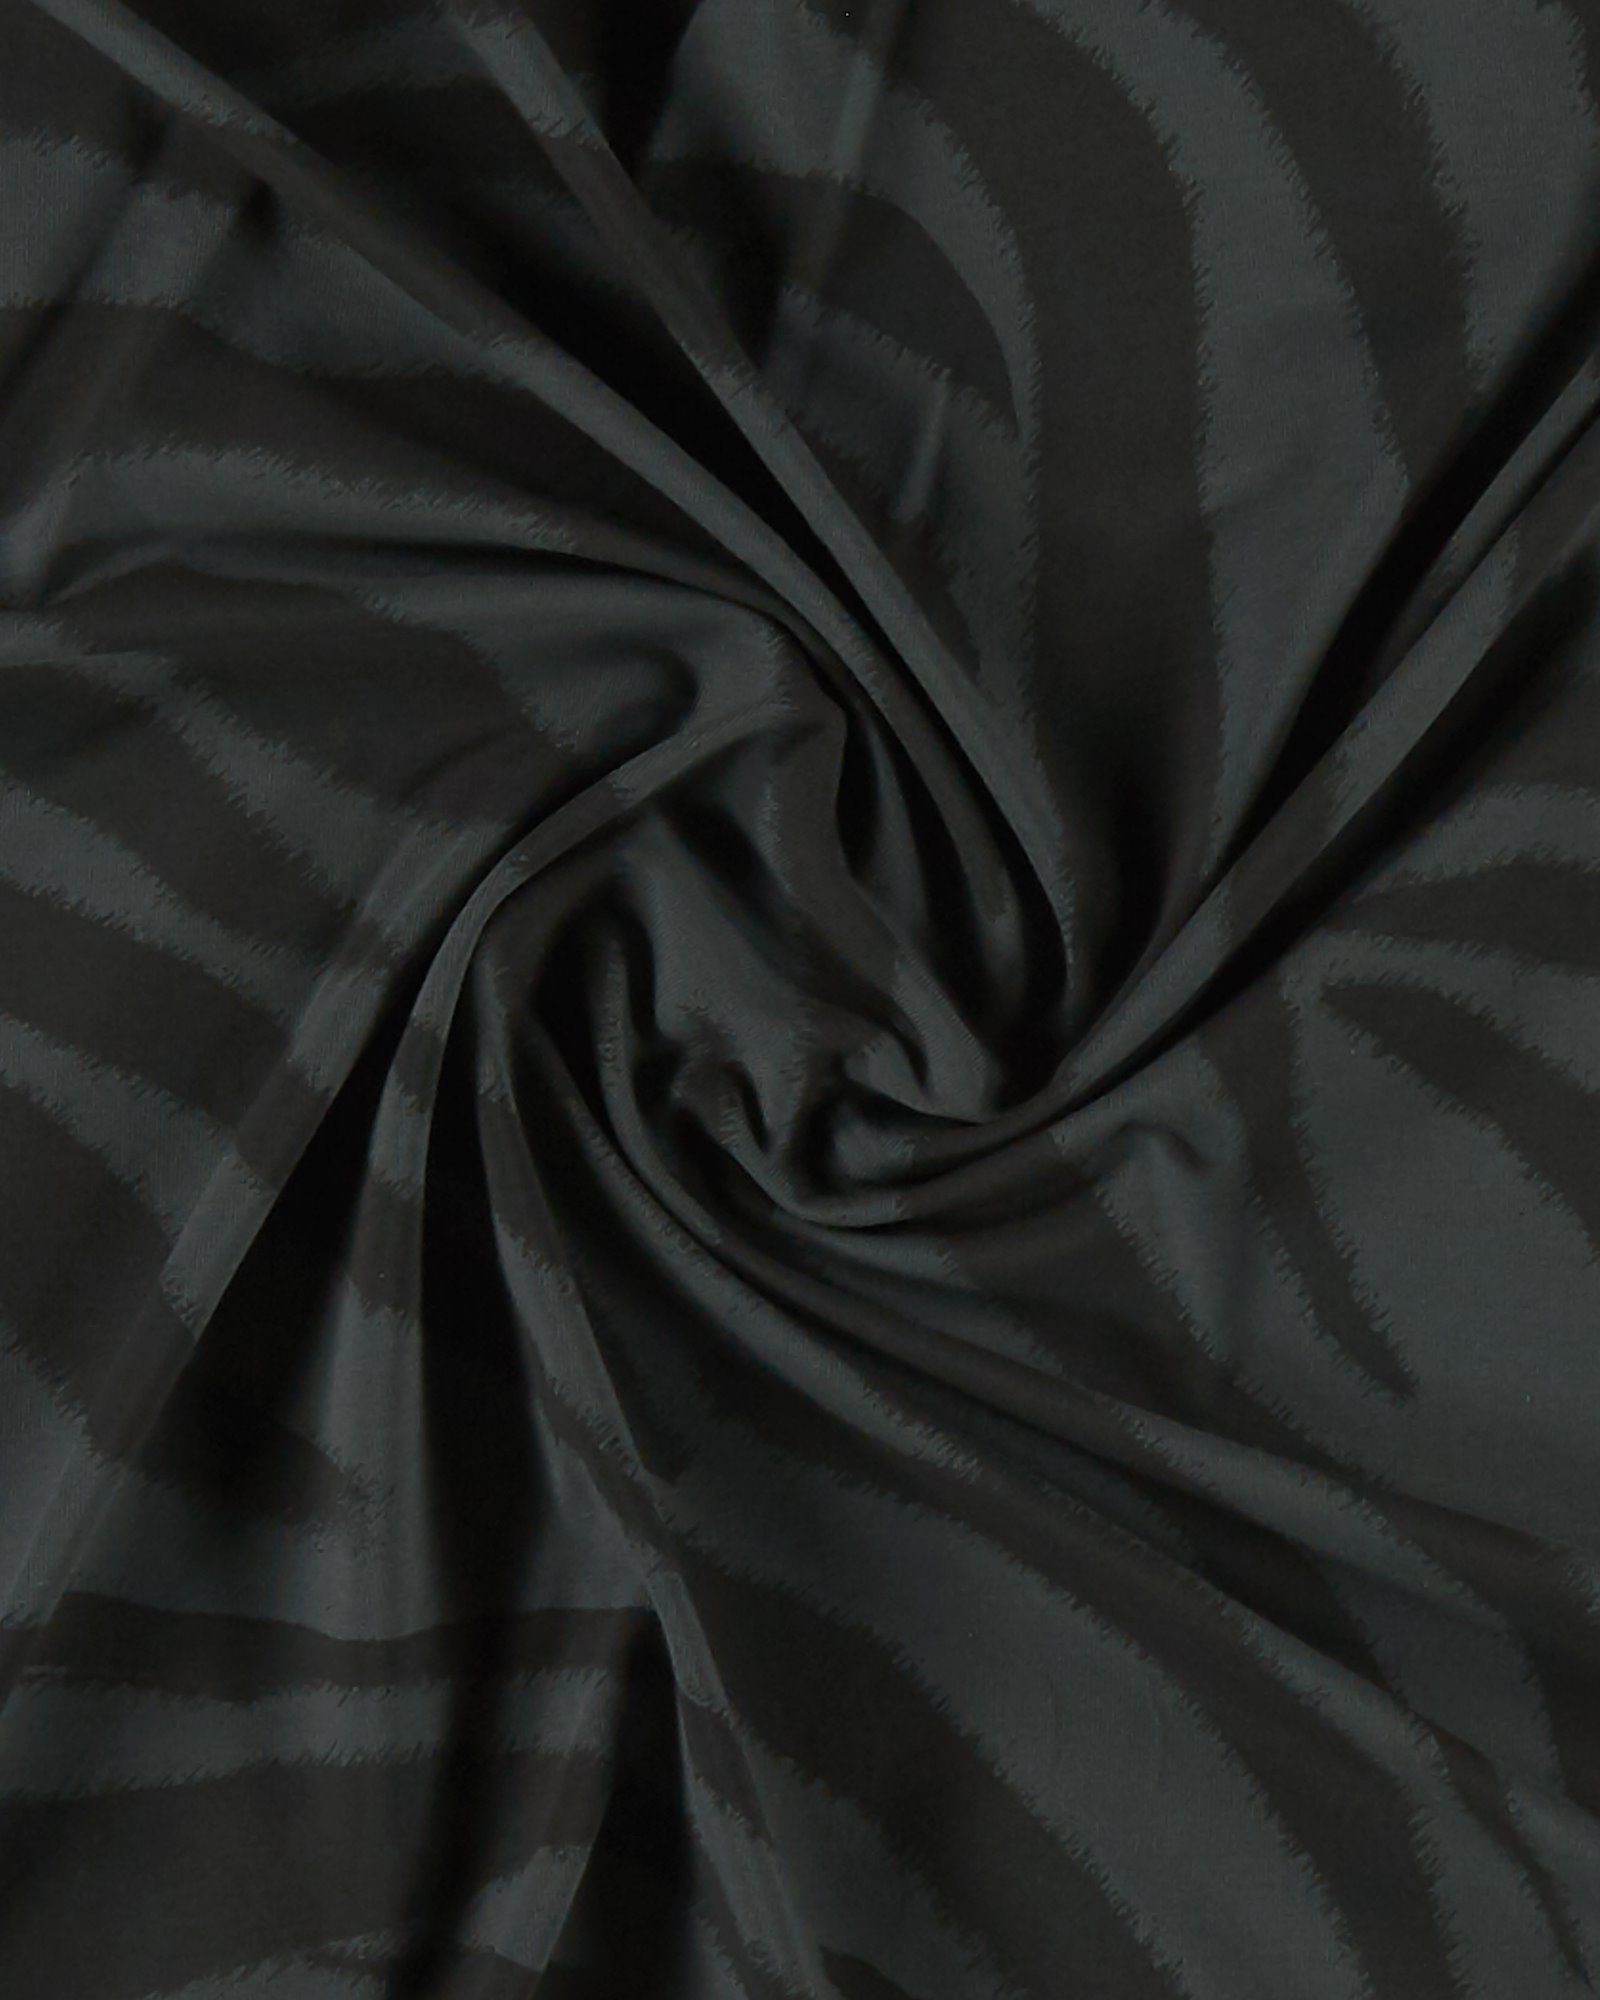 BCI str jersey dark grey w zebra stripes 273168_pack